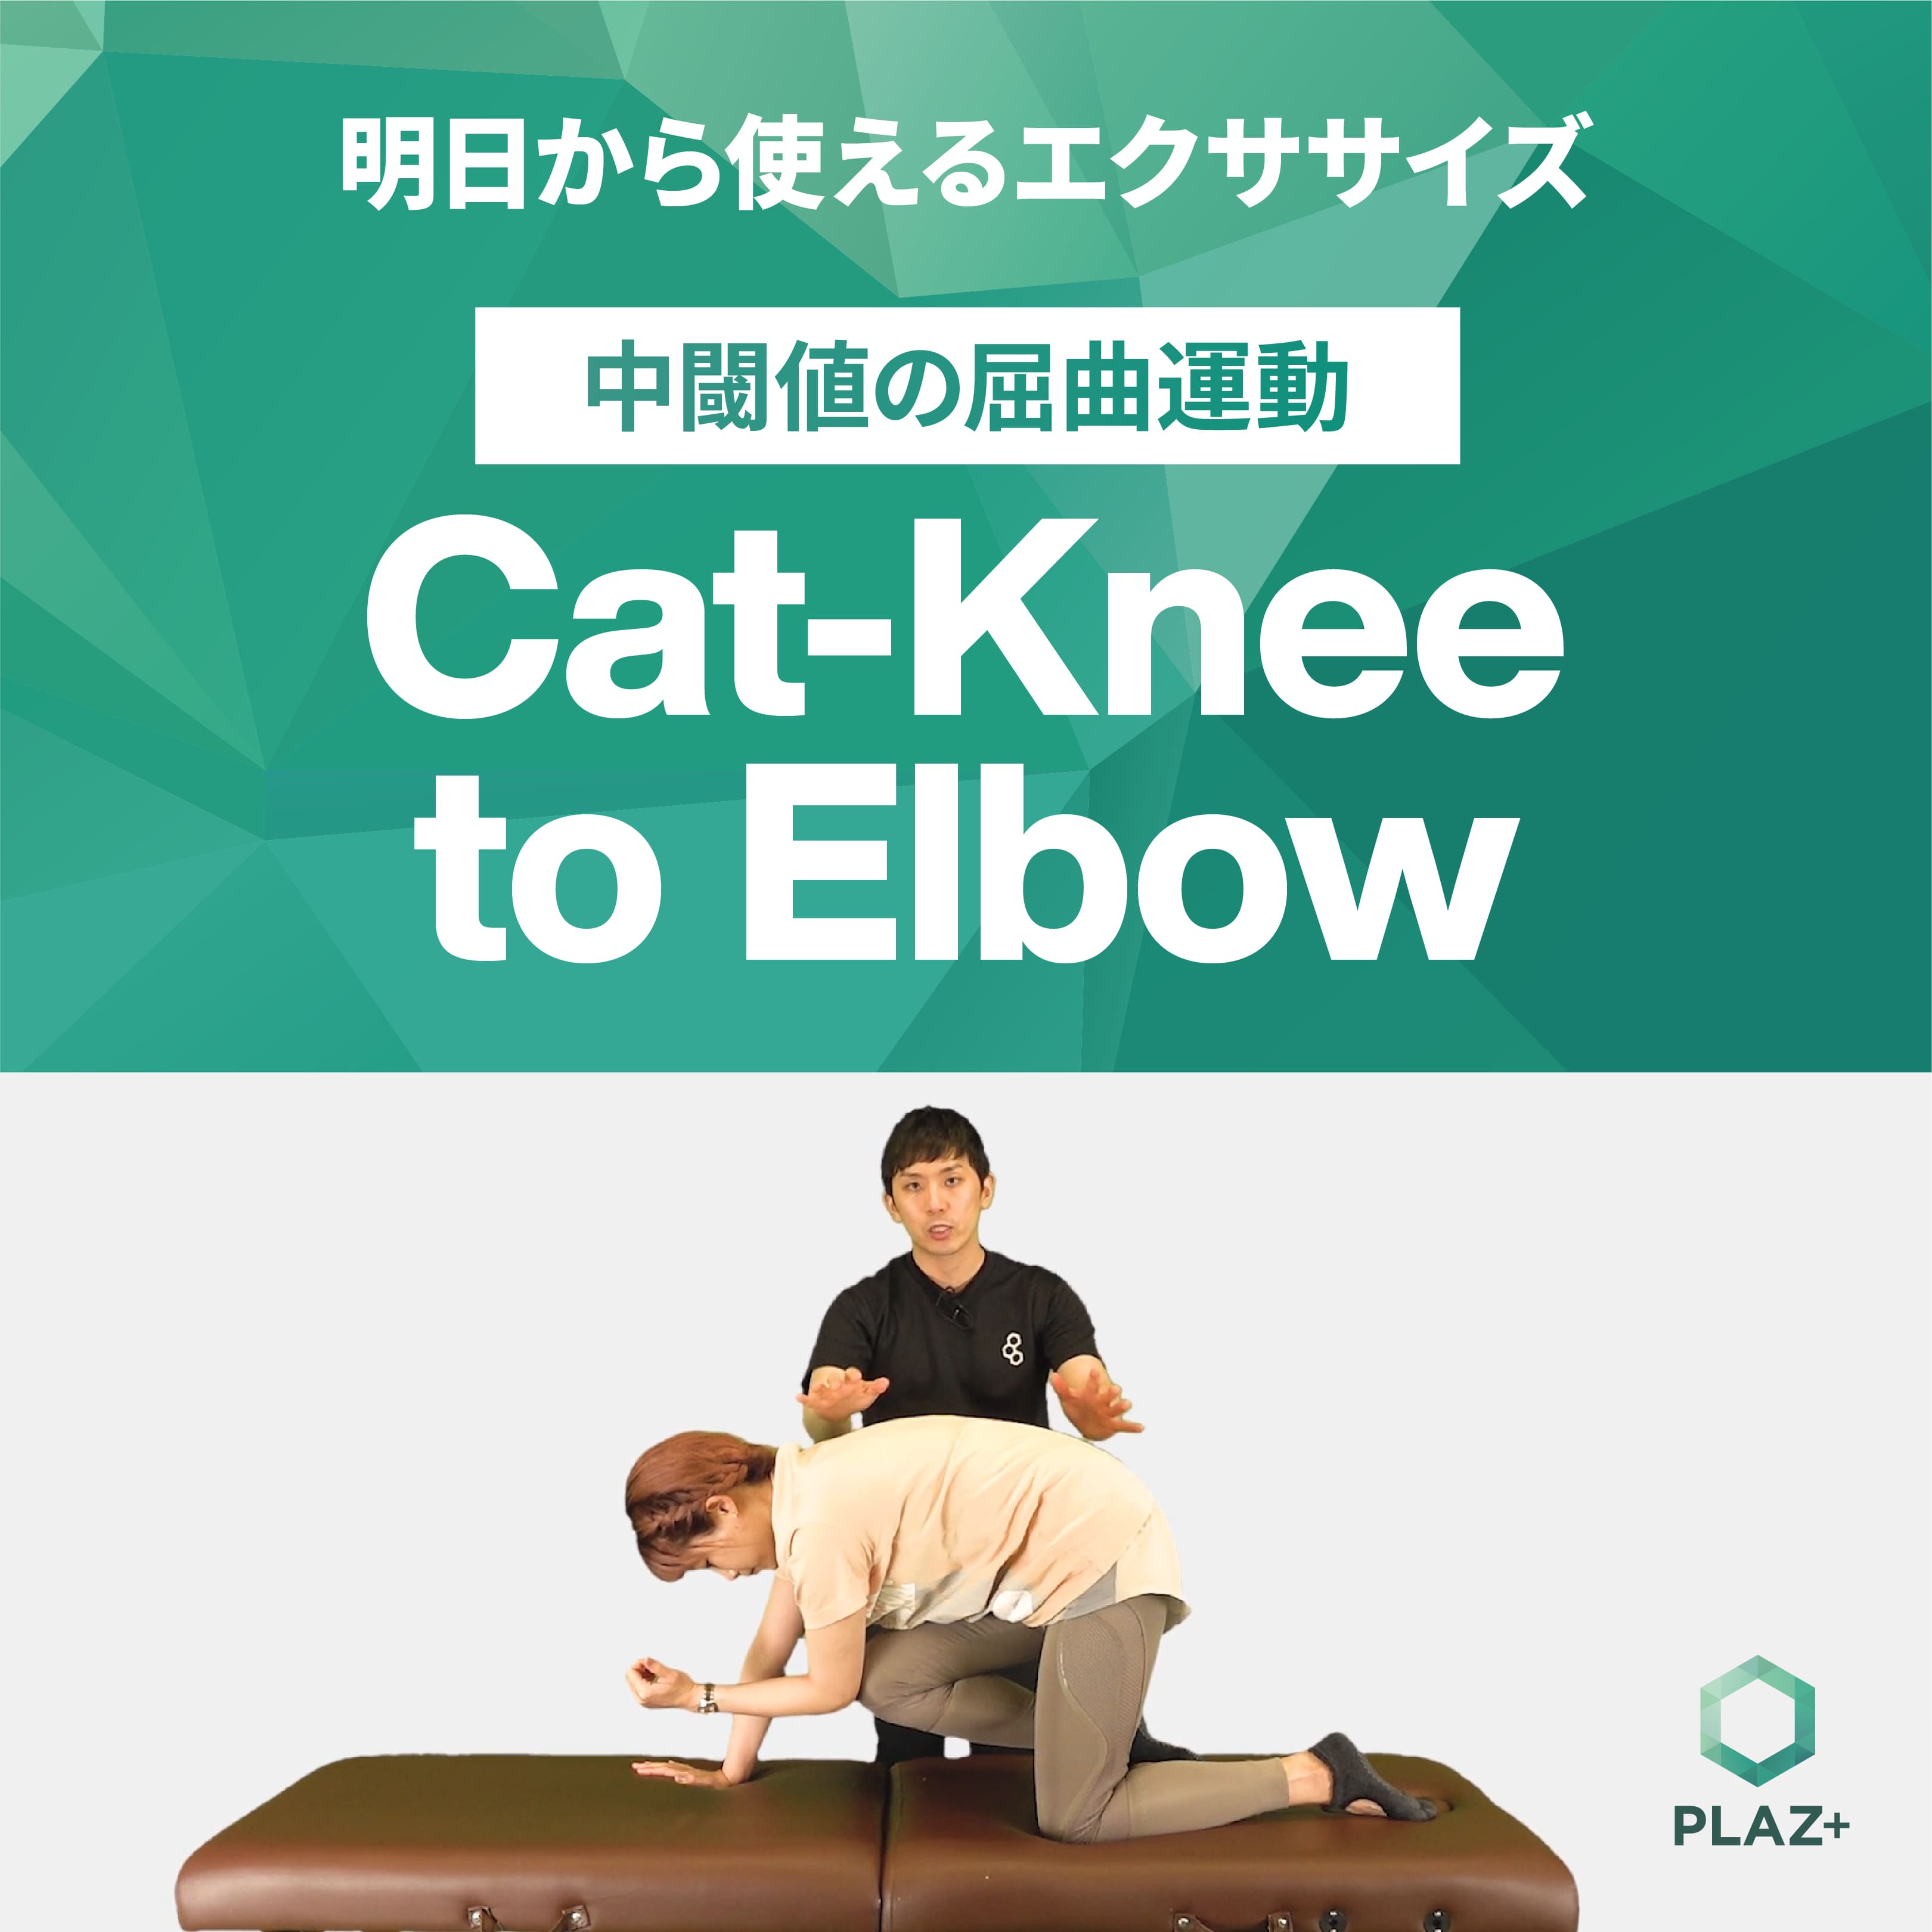 Cat-Knee to Elbow